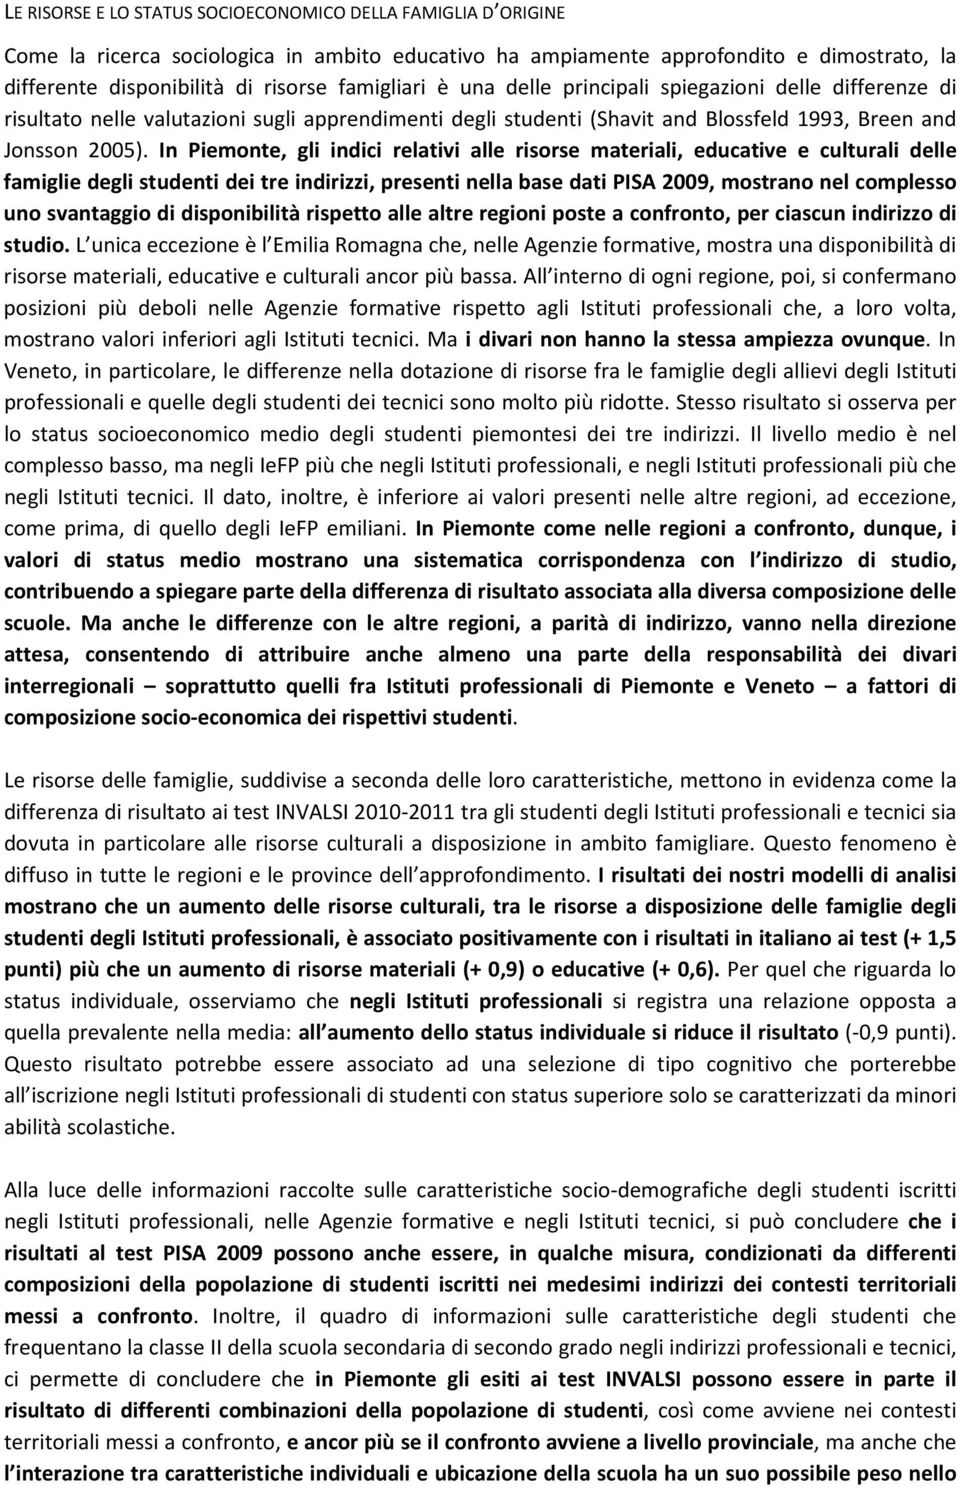 In Piemonte, gli indici relativi alle risorse materiali, educative e culturali delle famiglie degli studenti dei tre indirizzi, presenti nella base dati PISA 2009, mostrano nel complesso uno